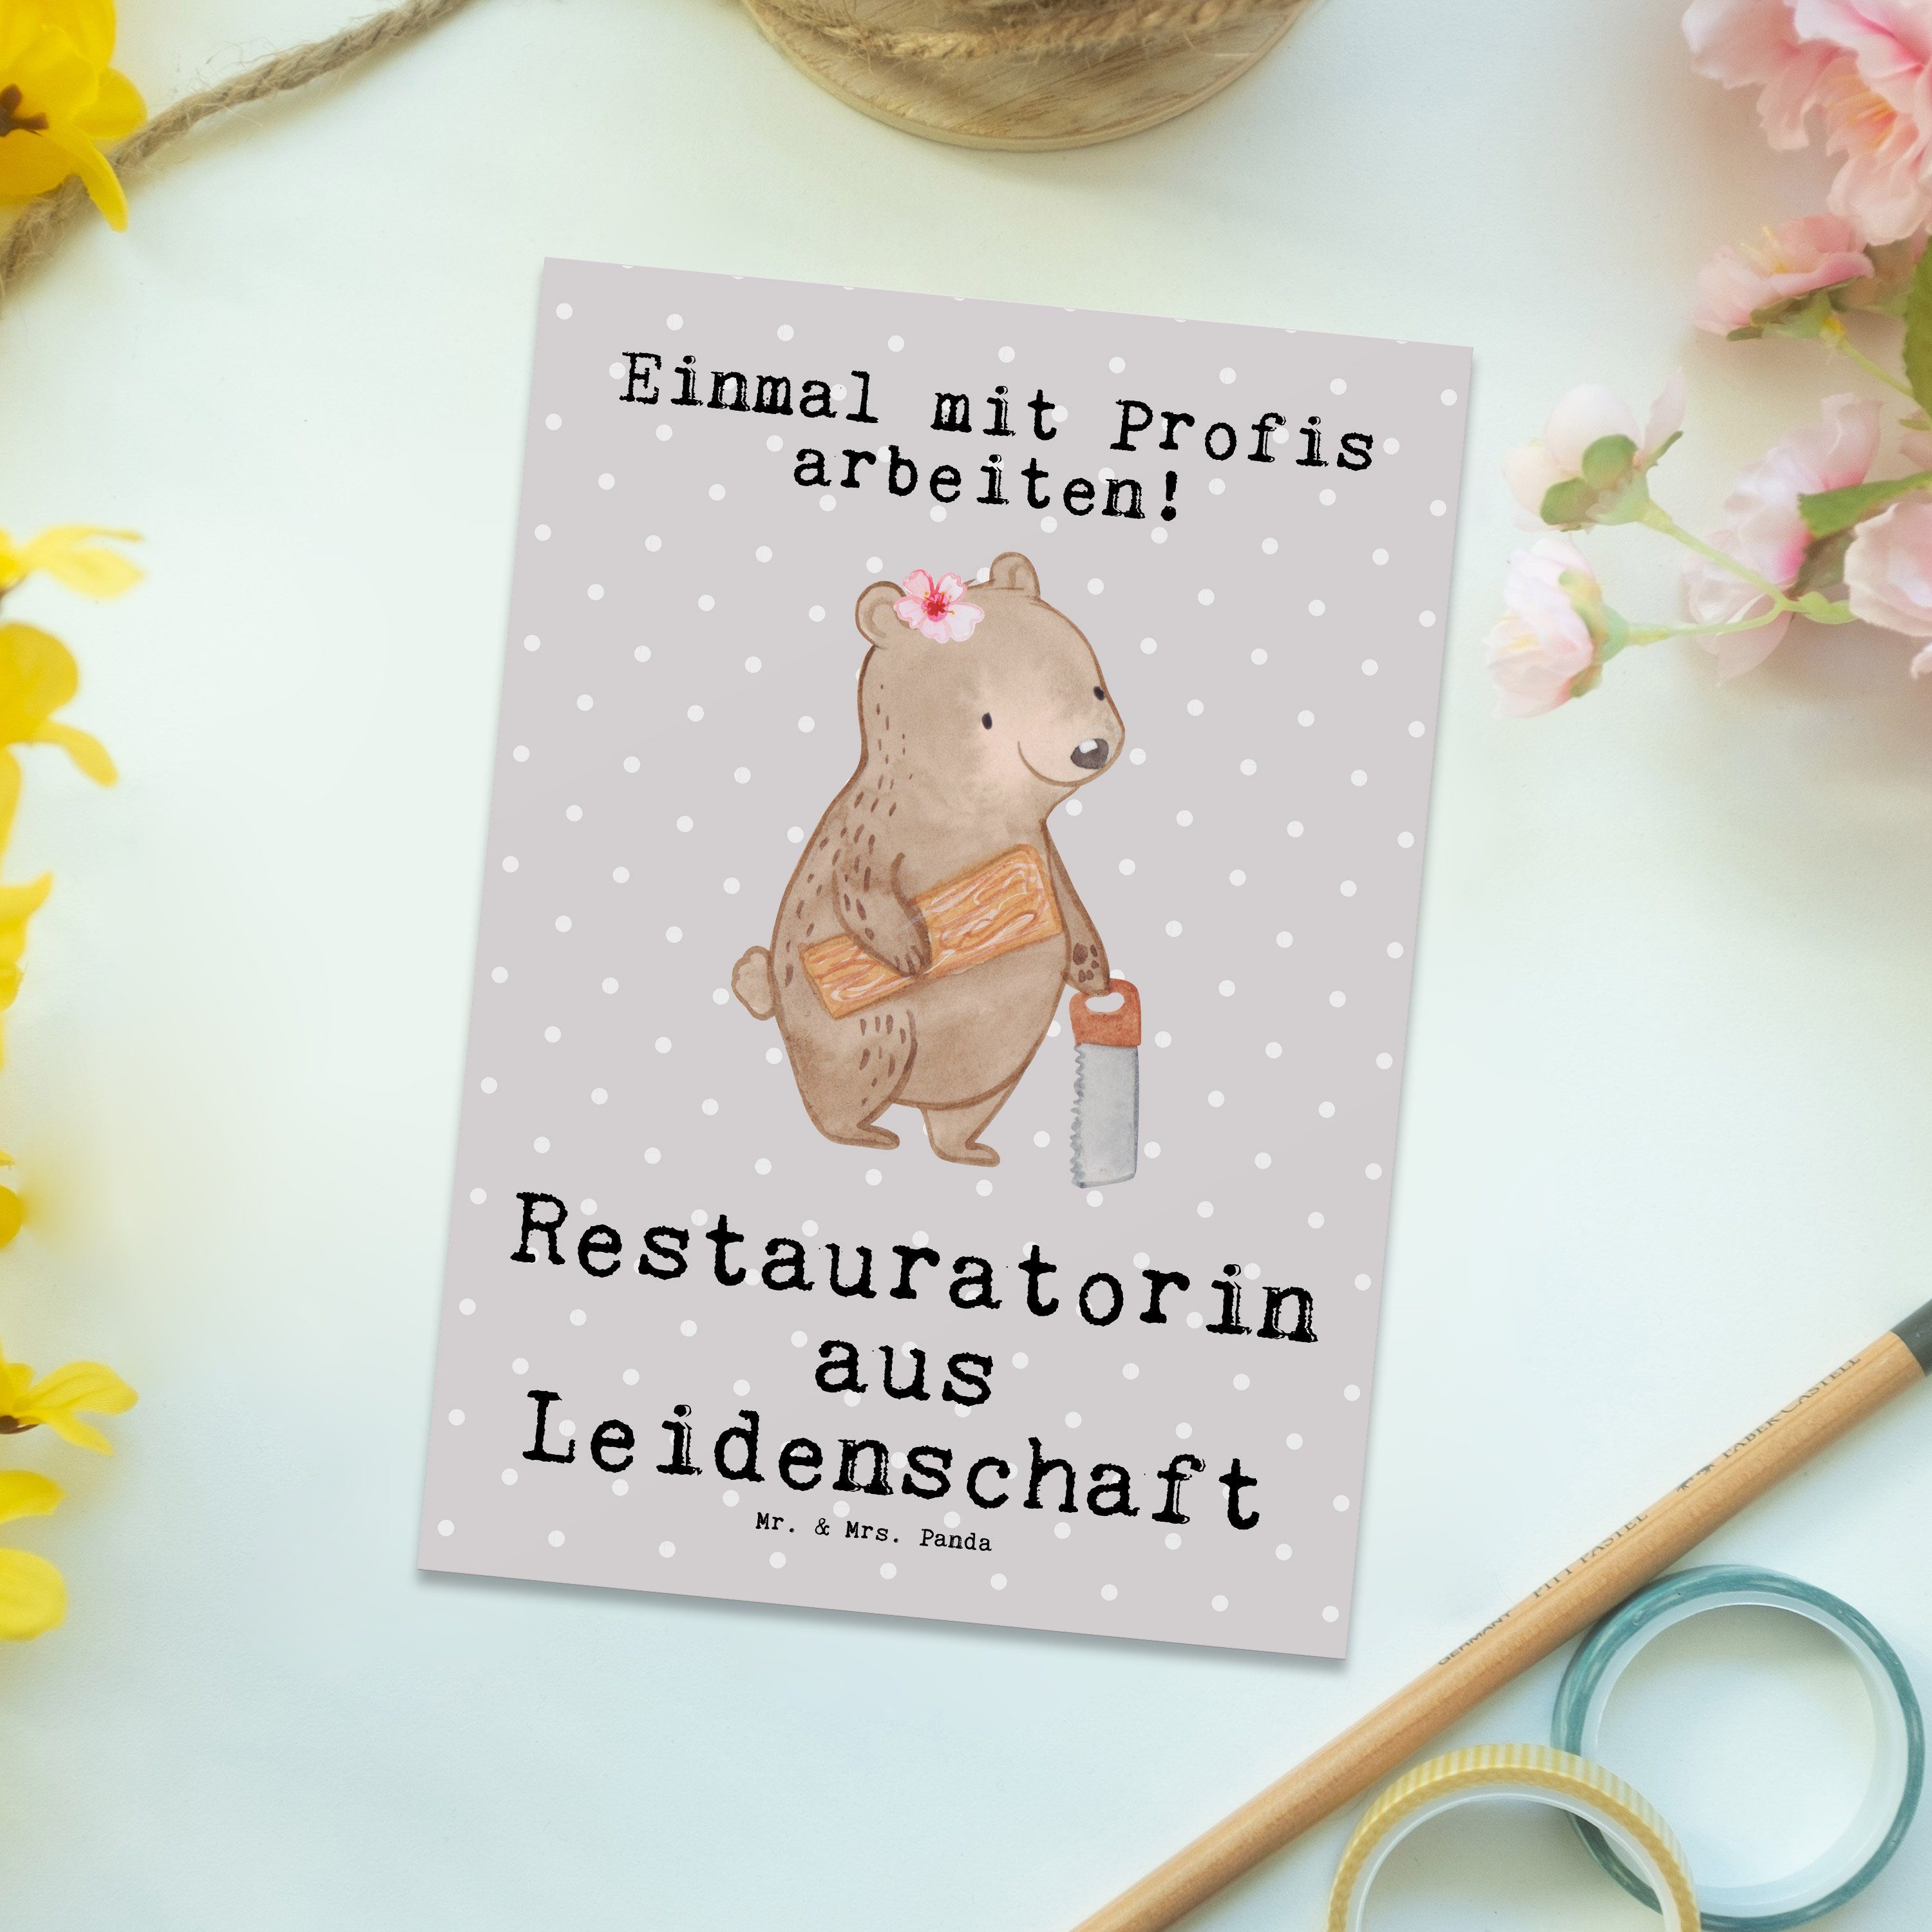 Mr. & Mrs. Panda Postkarte Restauratorin aus Leidenschaft - Grau Pastell - Geschenk, Geschenkkar